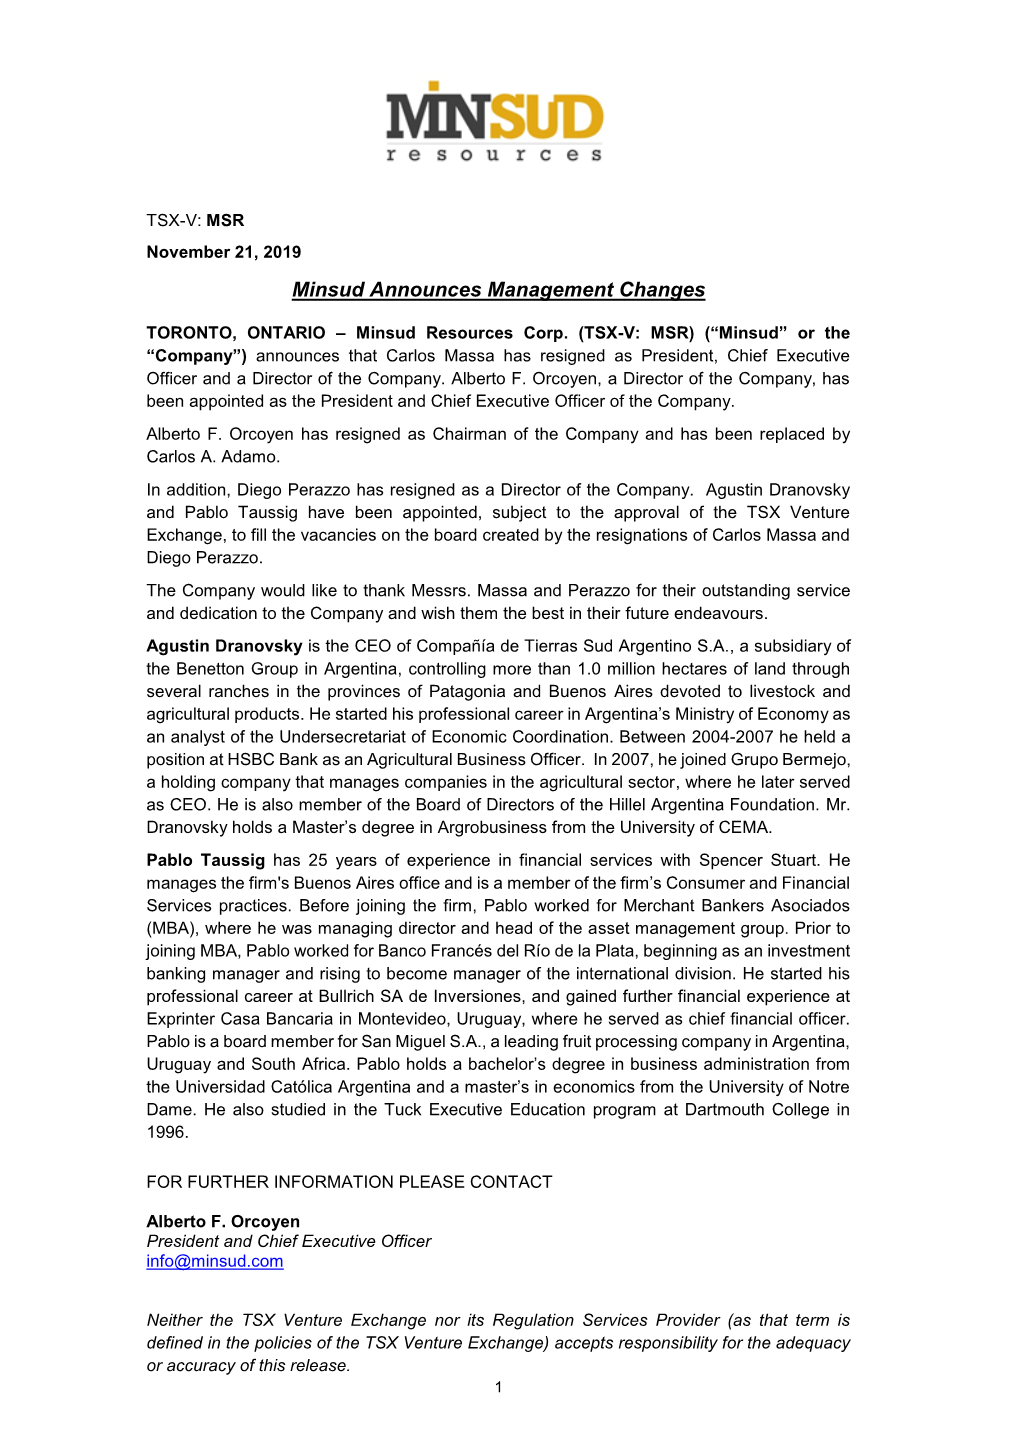 Minsud Announces Management Changes